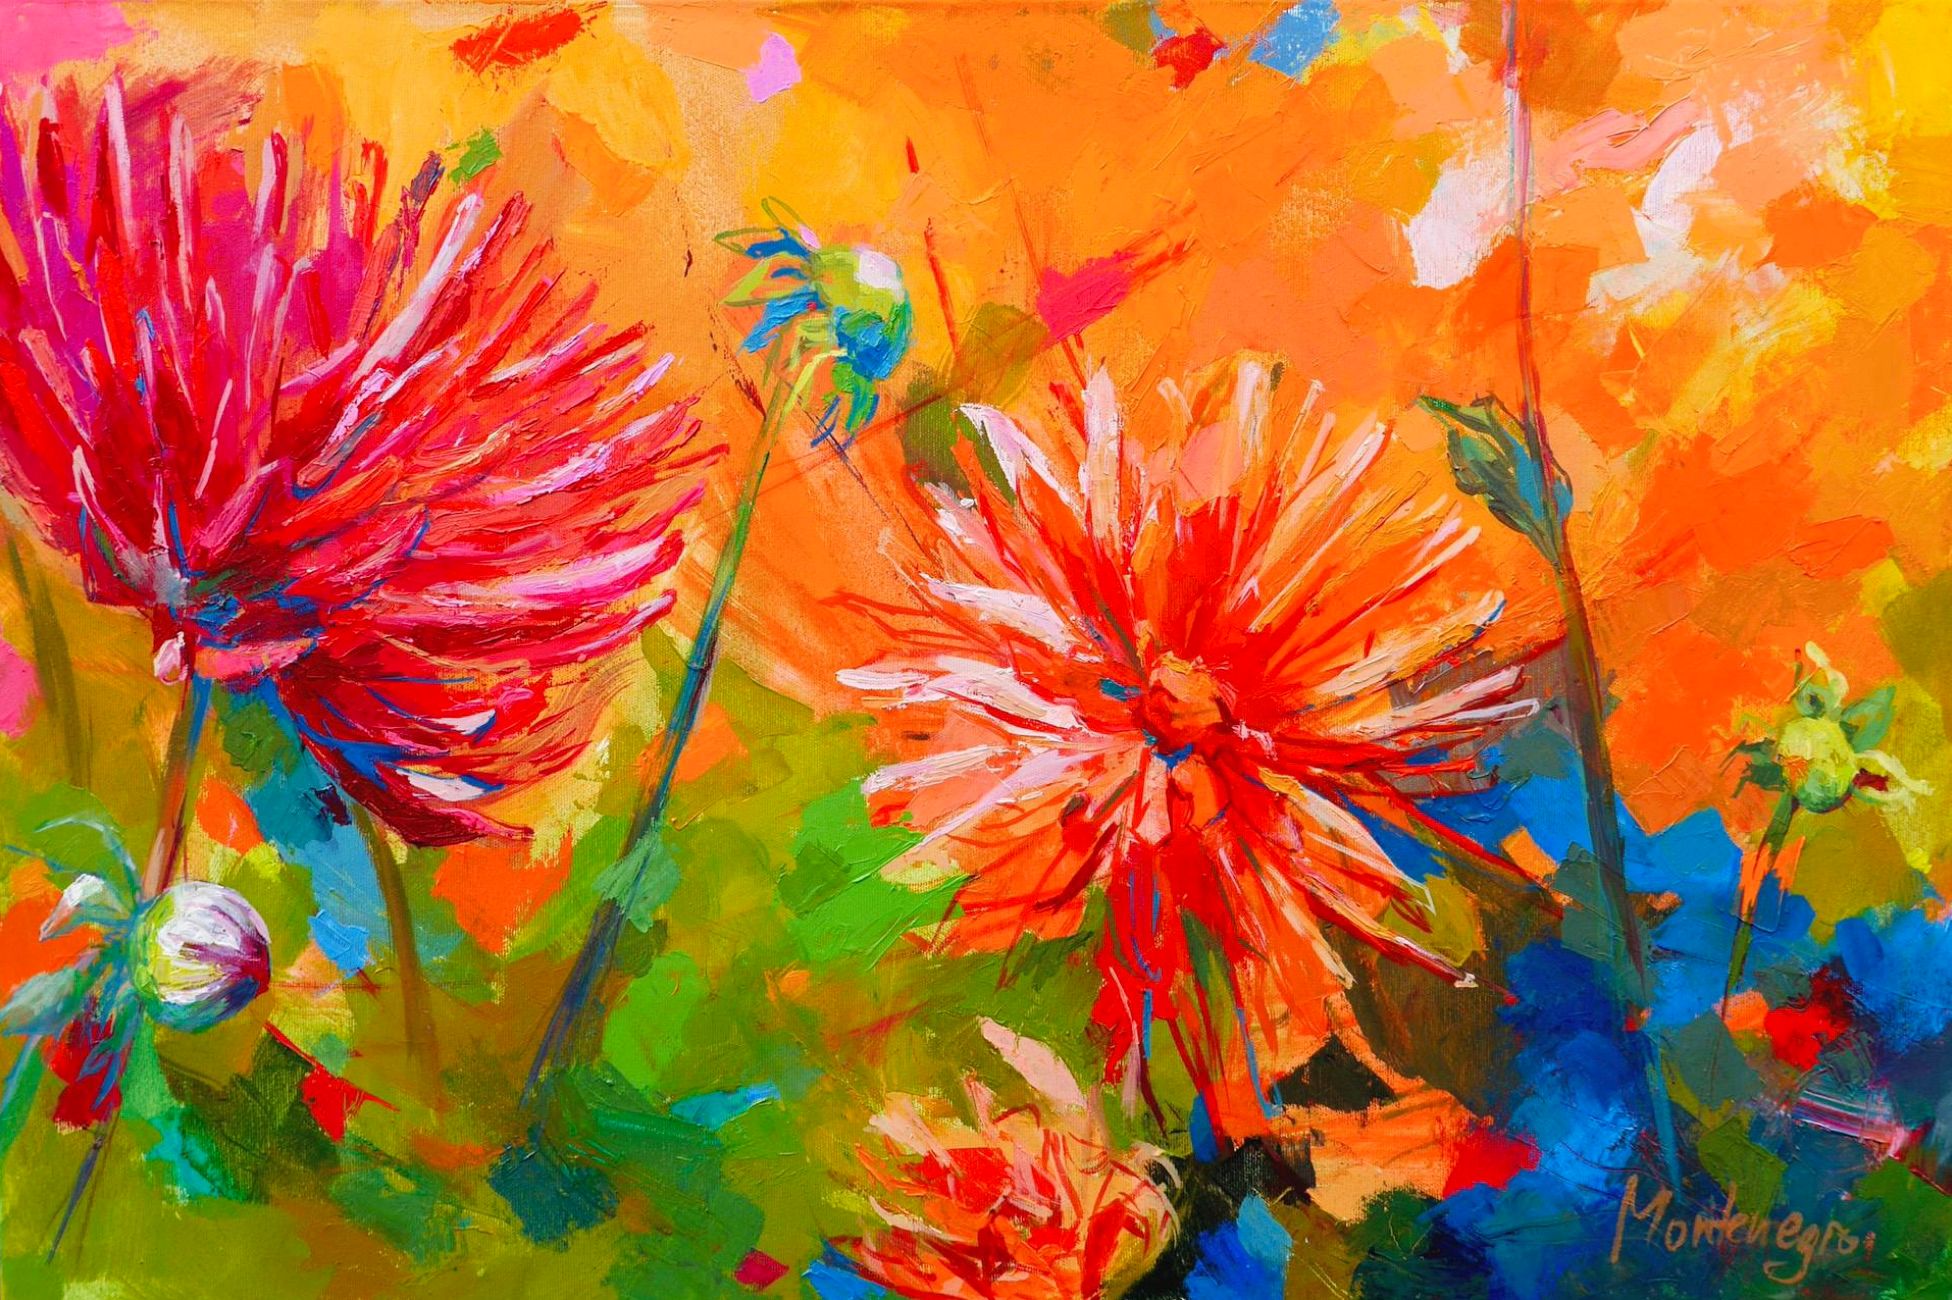 Miriam Montenegro pittura espressionista fiori rossi arancio con sfondo colorato